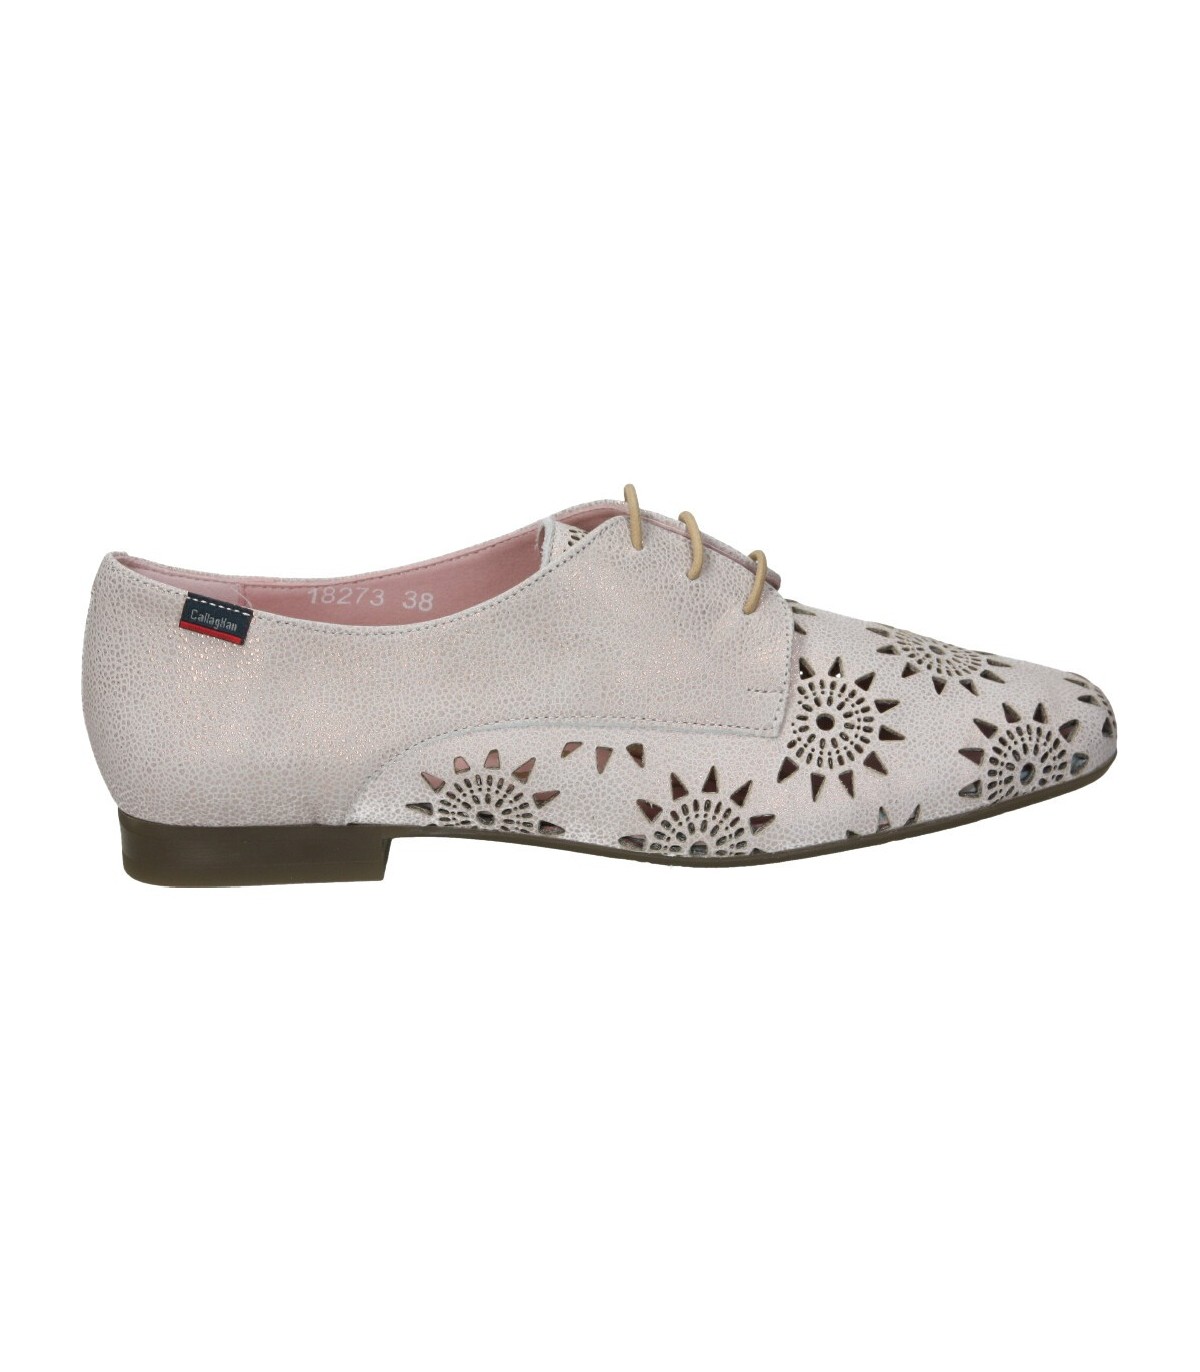 Zapatos color de casual callaghan 18273